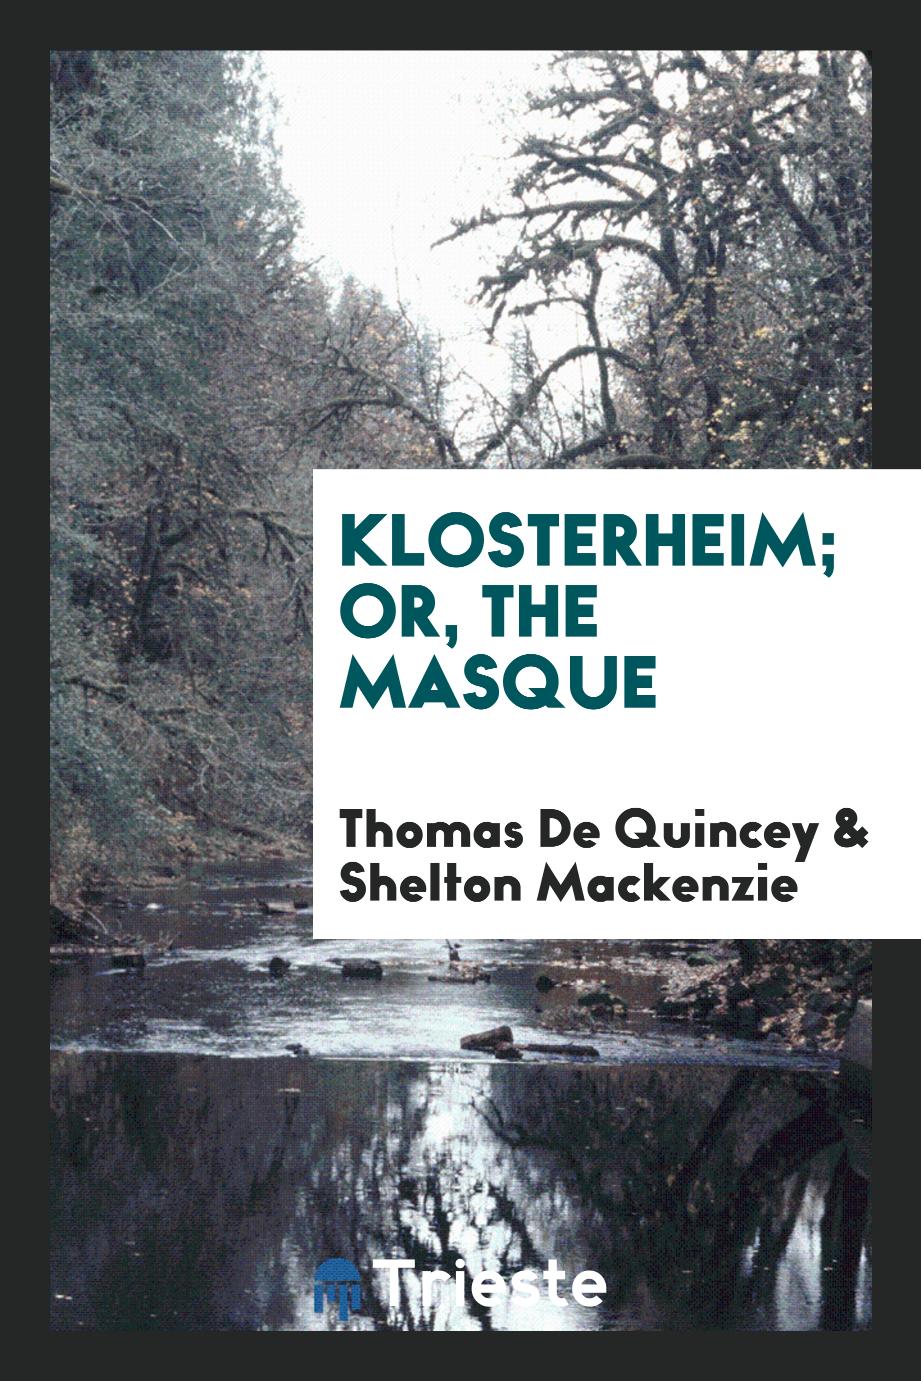 Klosterheim; or, The masque